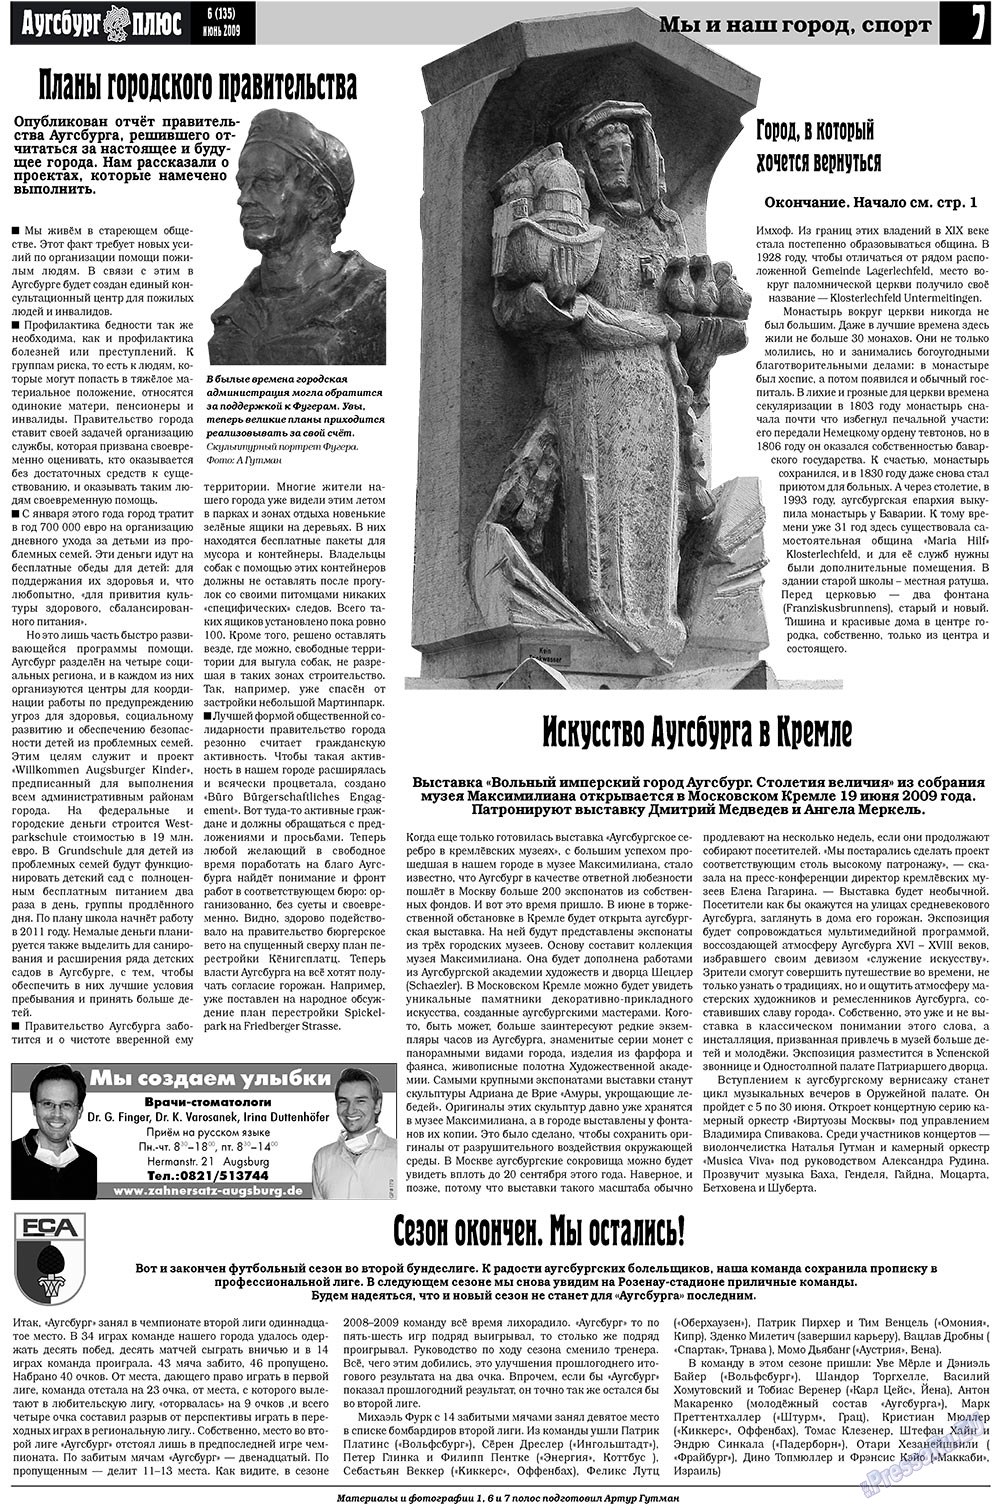 Германия плюс, газета. 2009 №6 стр.9